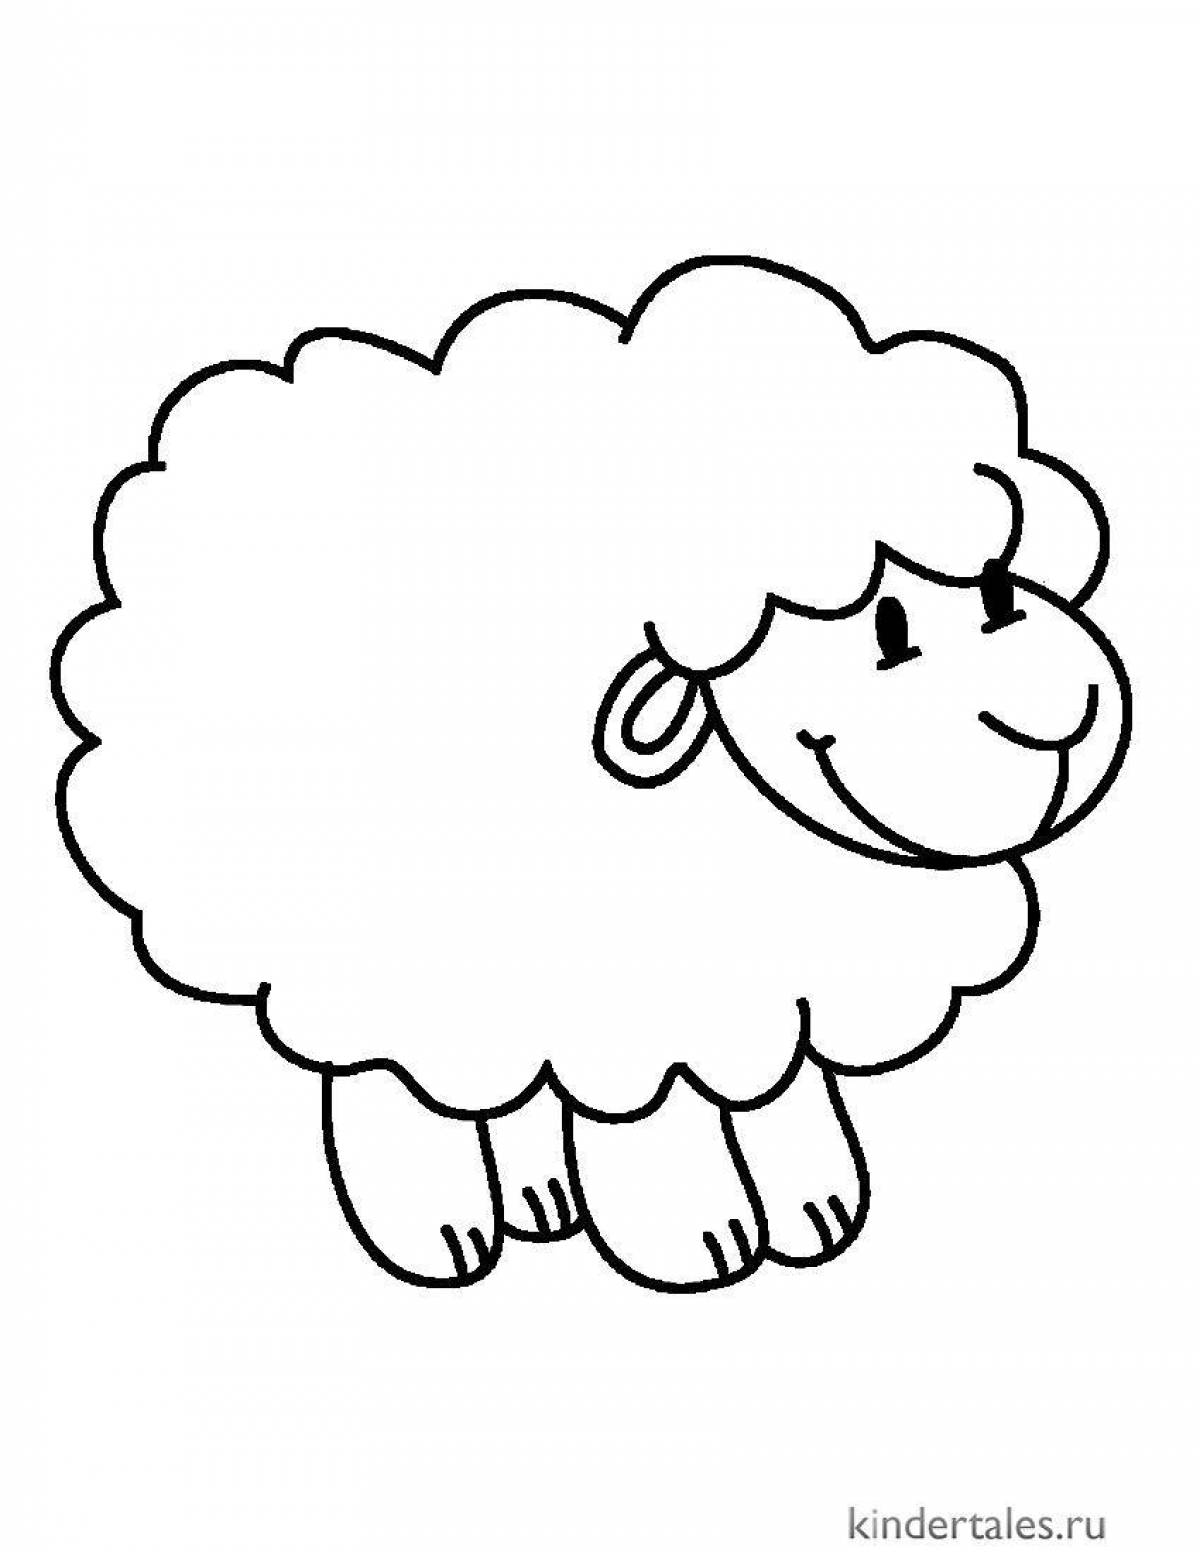 Очаровательная раскраска овечка для детей 2-3 лет